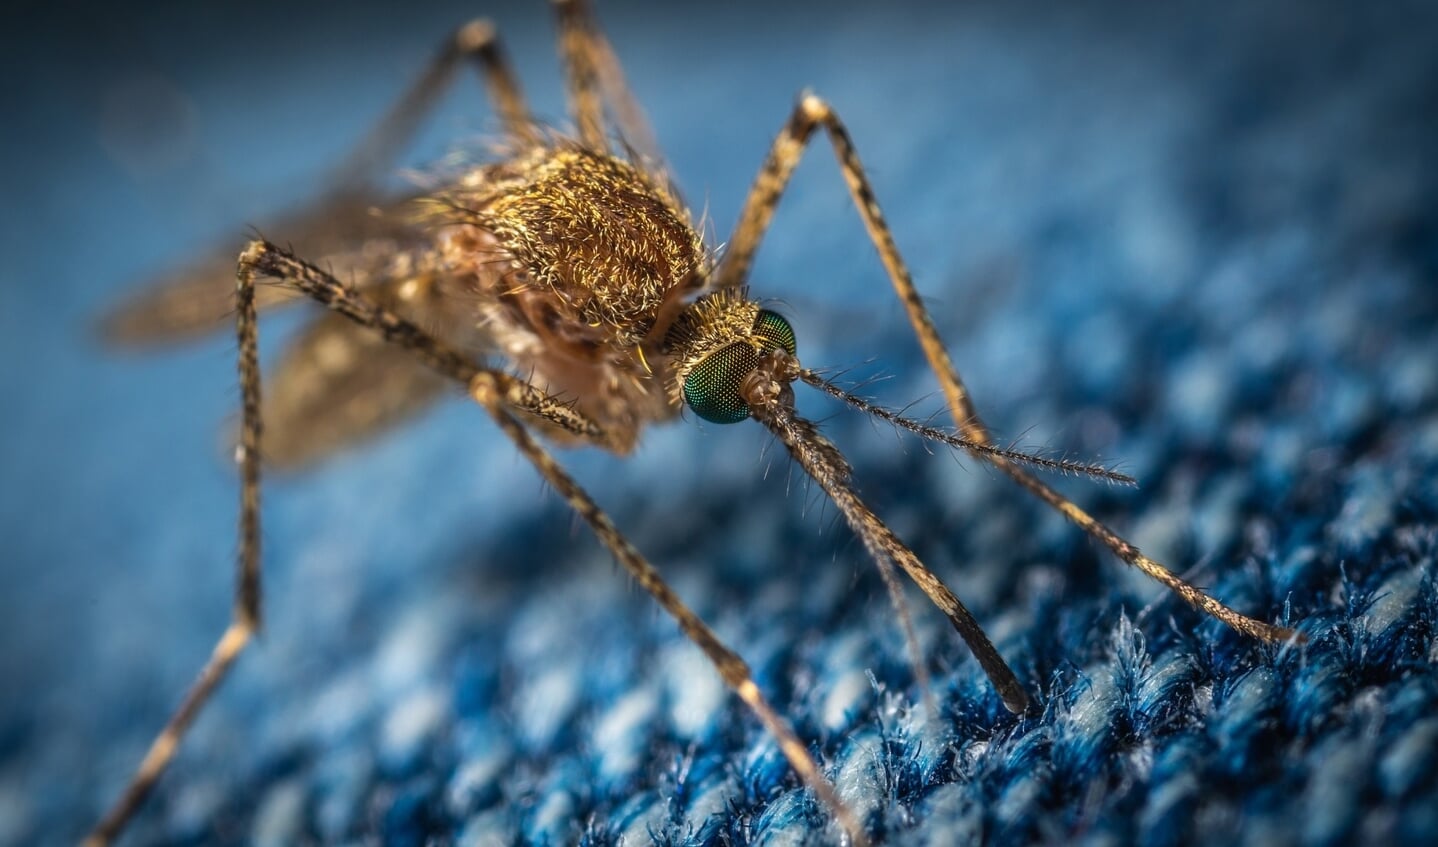 Maak via de Mosquito Alert app foto’s van muggen, muggenbeten en muggenbroedplaatsen.